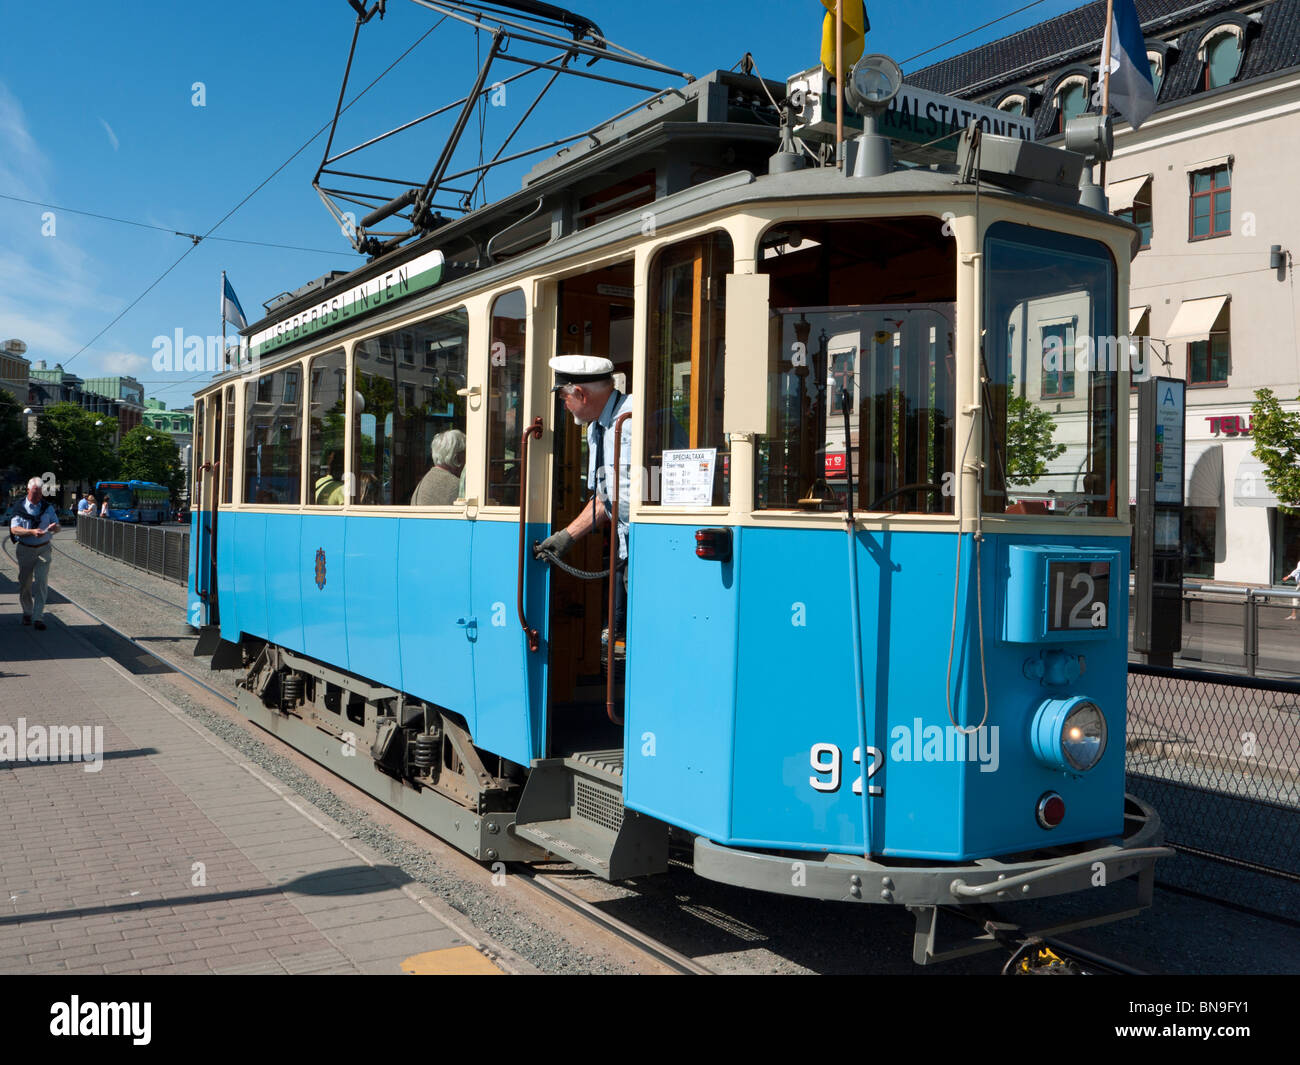 Avis de tram vintage les touristes à la réalisation du parc d'attractions Liseberg à Gothenburg en Suède Scandinavie Banque D'Images